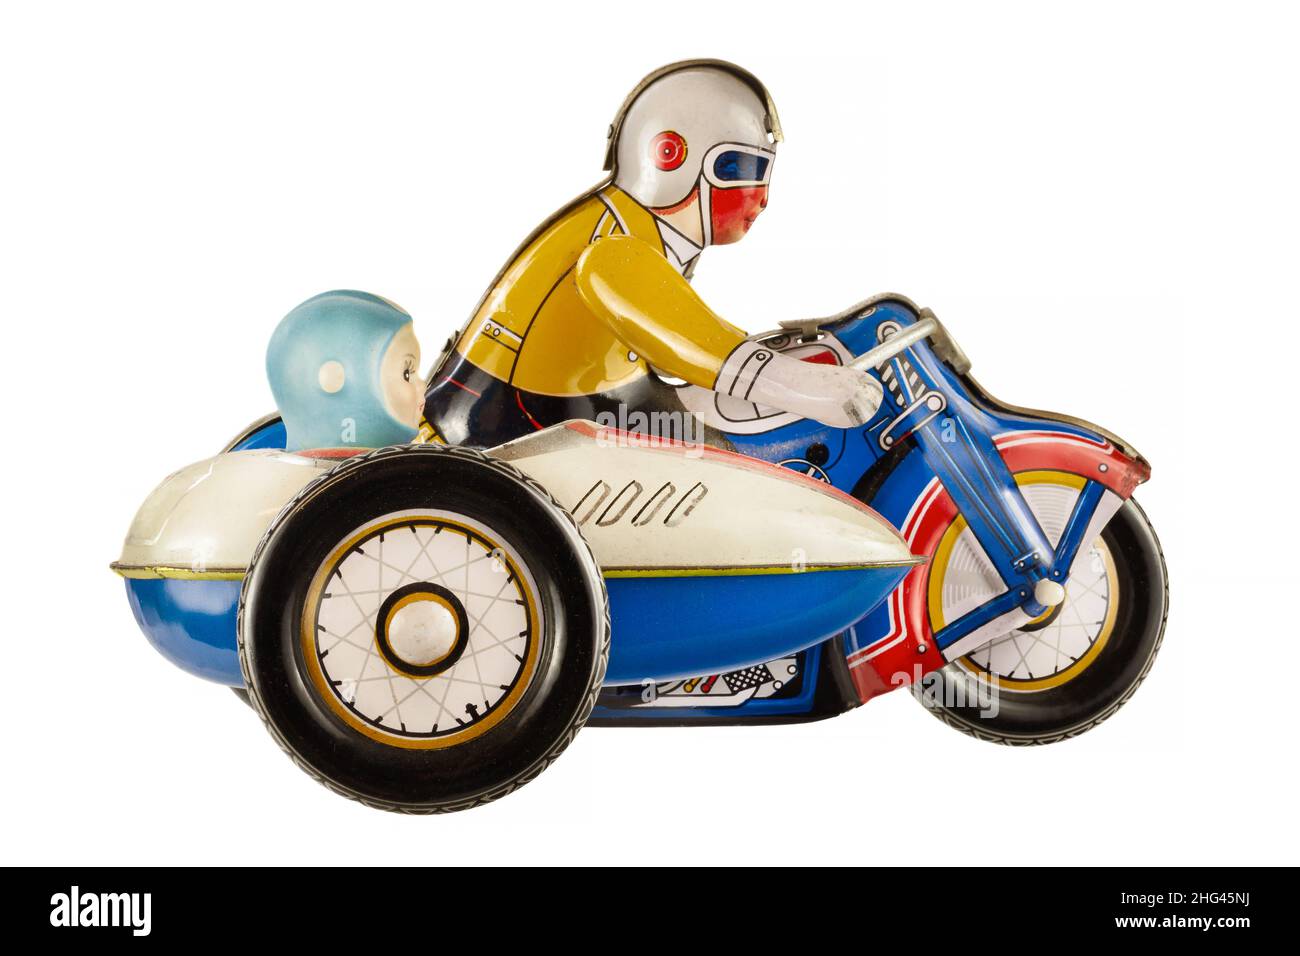 Moto d'epoca con giocattolo in metallo sidecar isolato su sfondo bianco Foto Stock